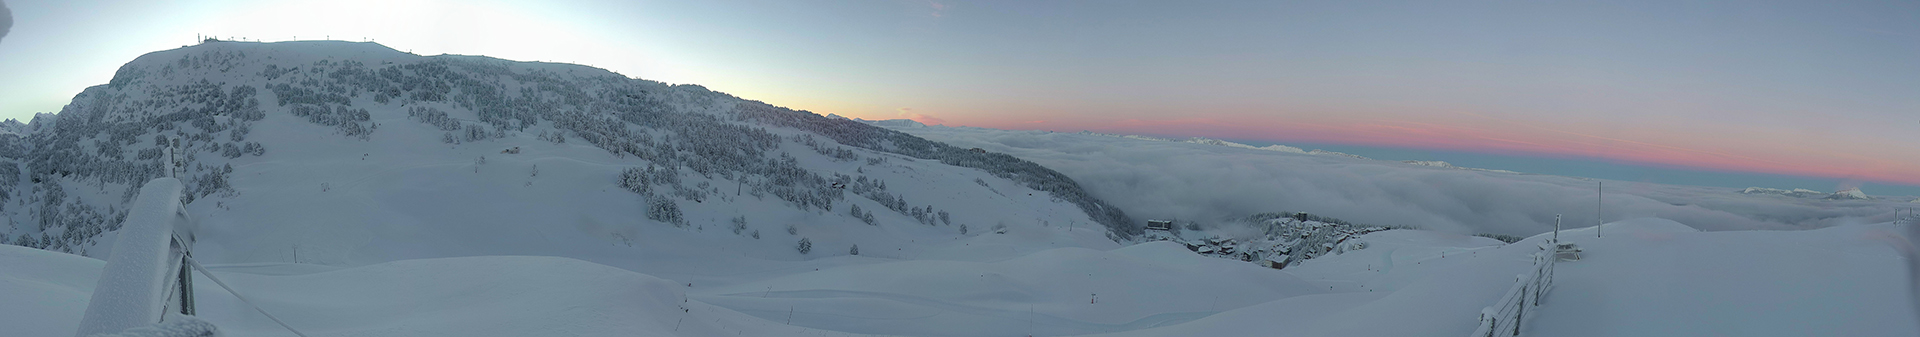 Chamrousse webcam lever soleil janvier 2021 station ski montagne grenoble isère alpes france - © Skaping